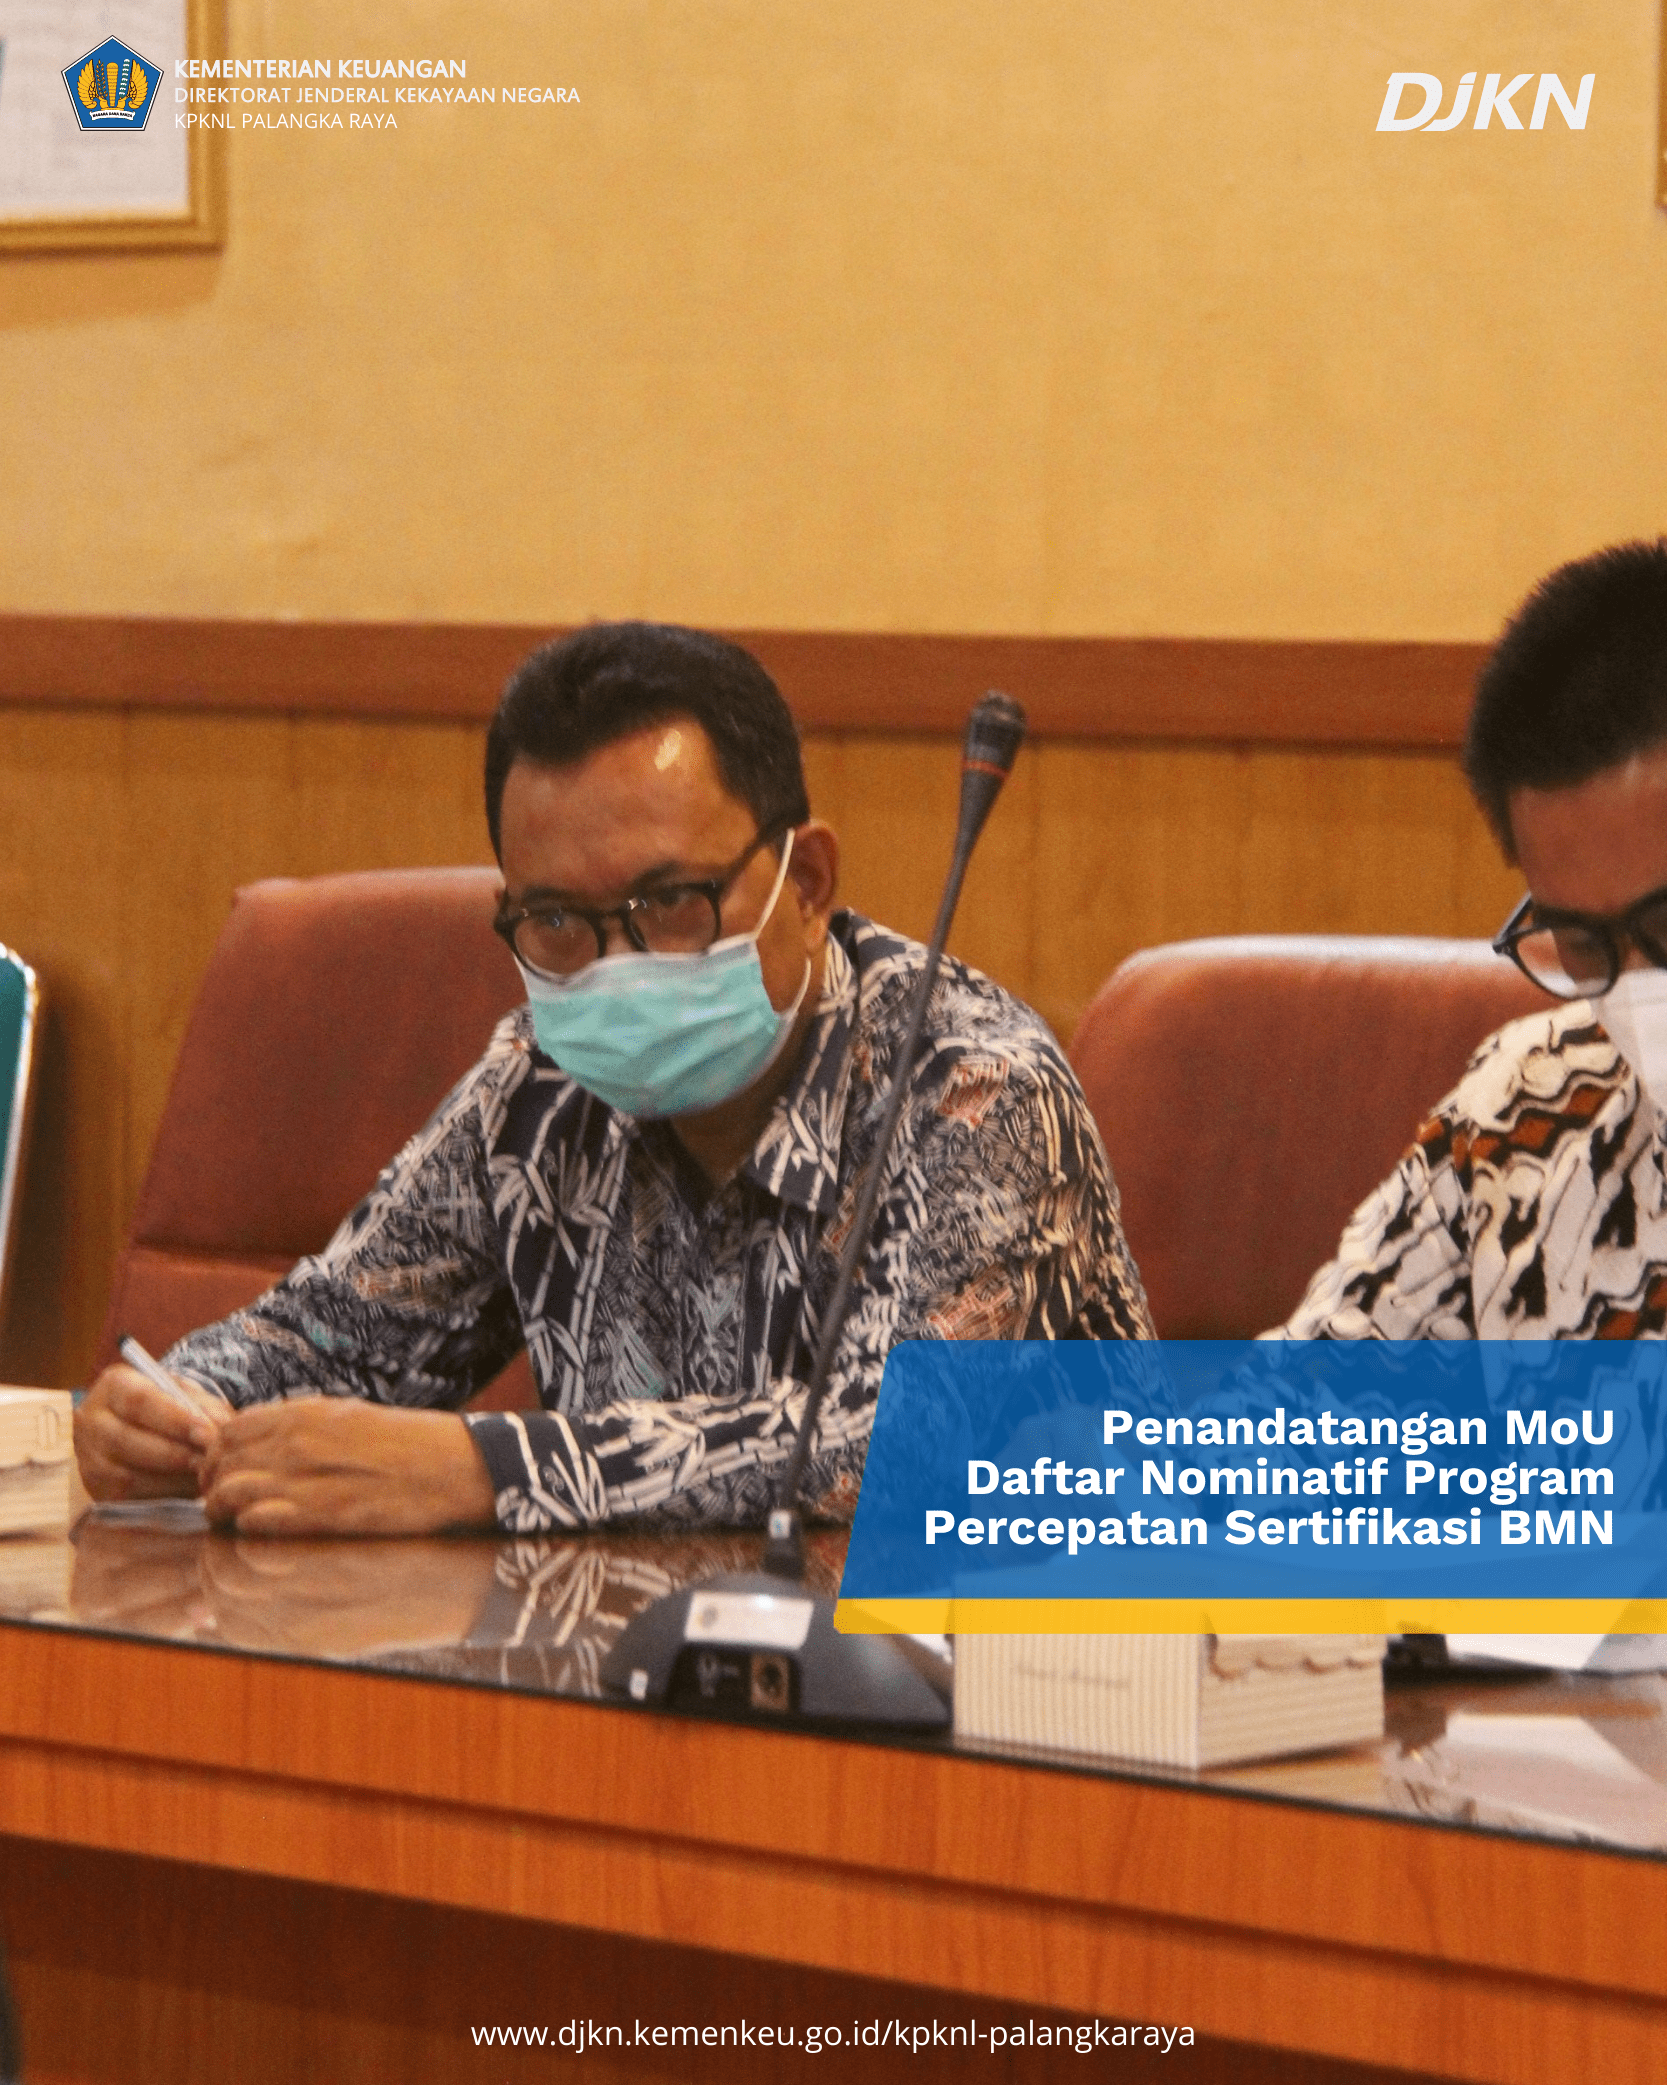 Penandatanganan Nota Kesepahaman (MoU) Daftar Nominatif Program Percepatan Sertifikasi BMN Berupa Tanah Tahun 2022 Wilayah Kalimantan Tengah